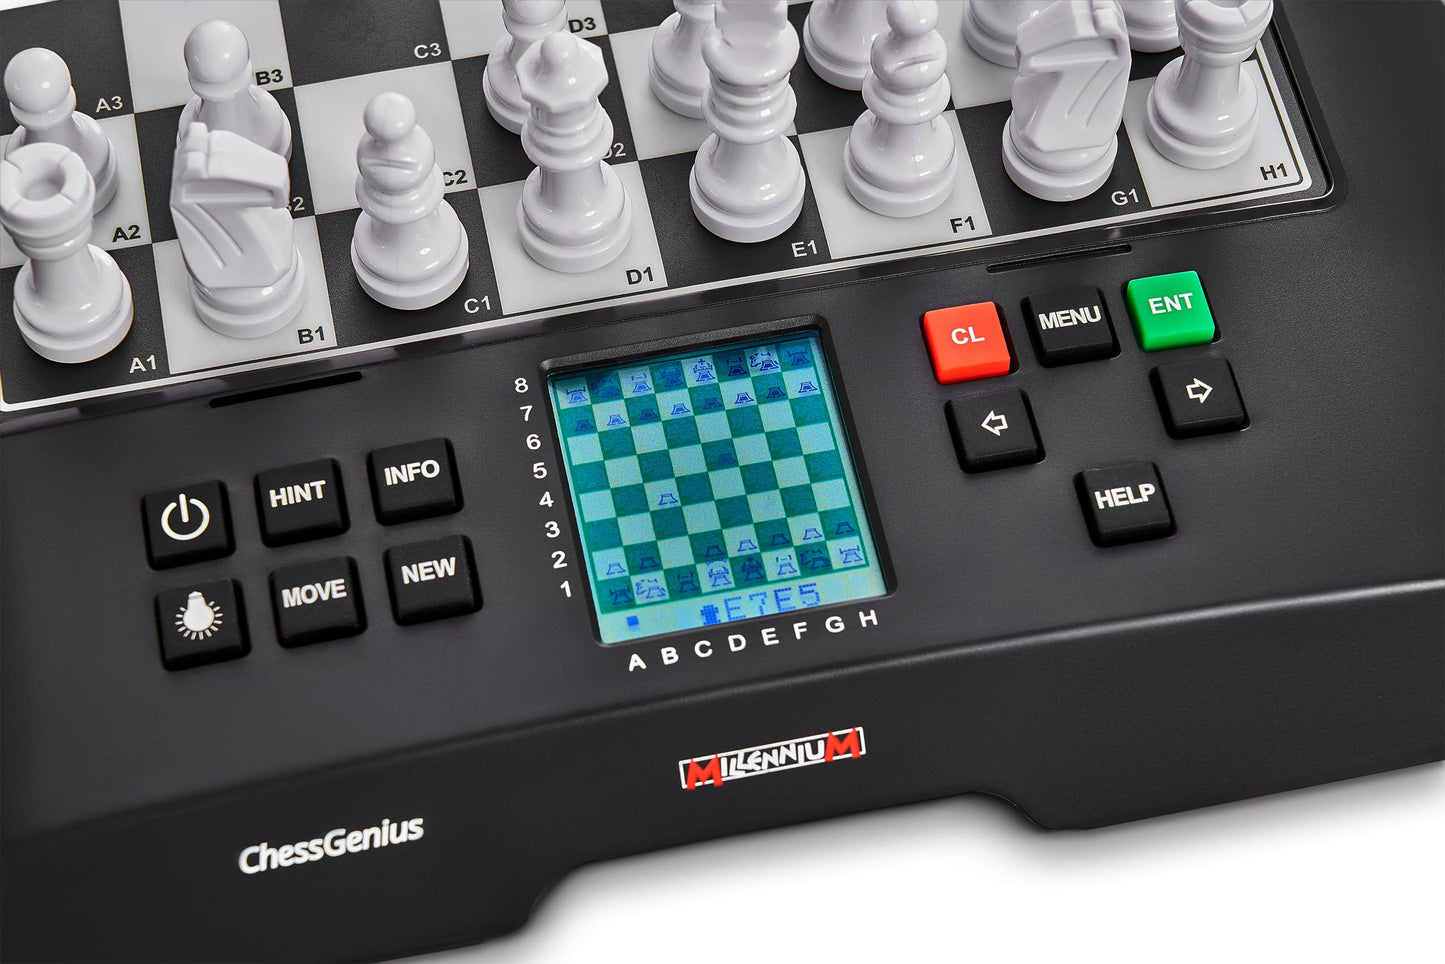 Shakkitietokone Millennium ChessGenius M810